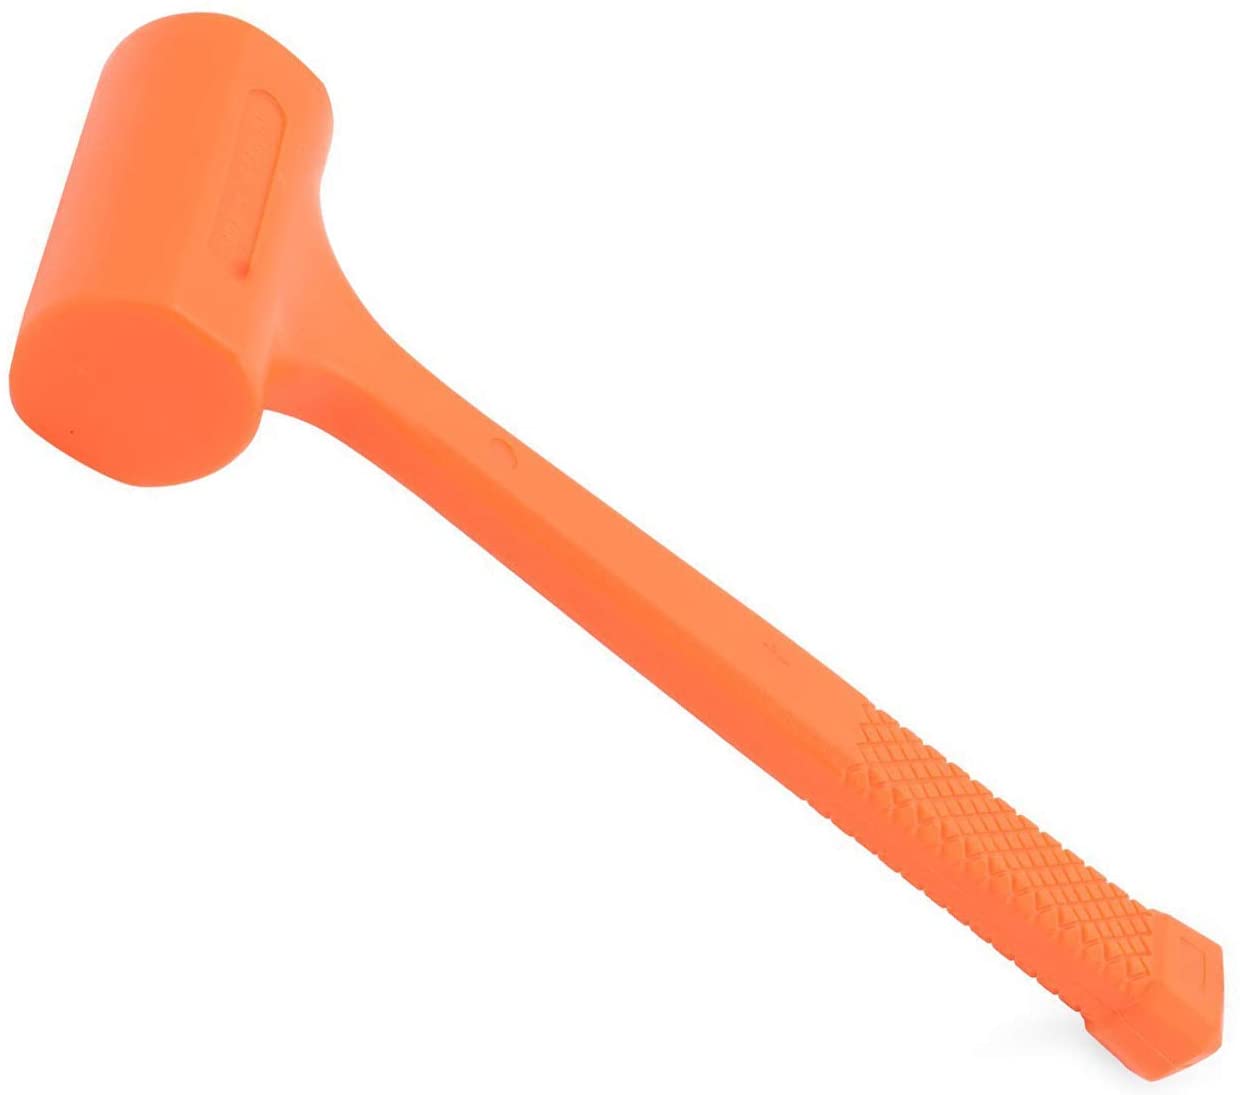 King 1486-0 Dead Blow Hammer, 4 lb, Neon Orange